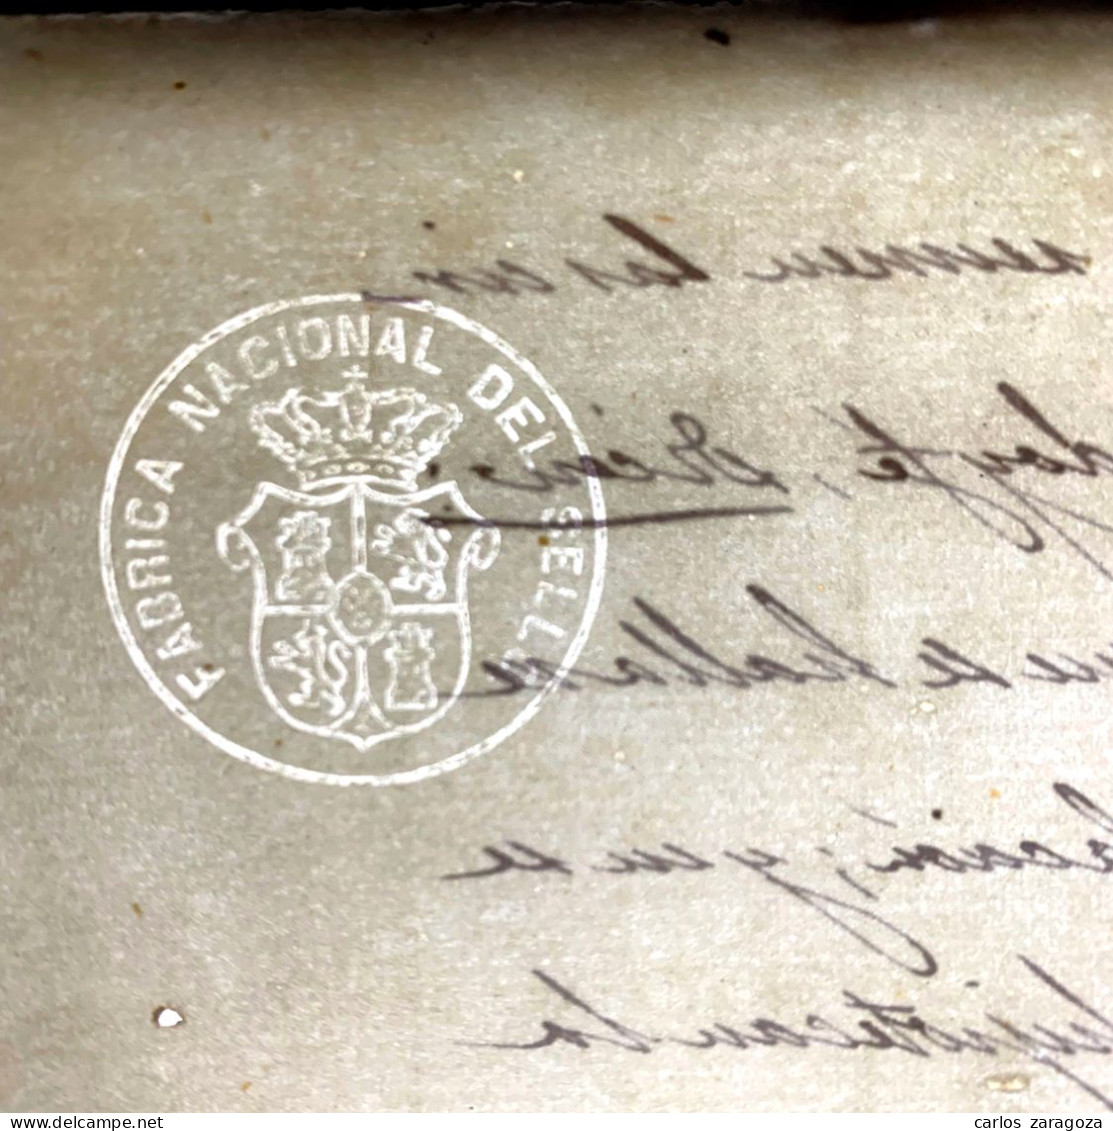 ESPAÑA 1867—TIMBRE FISCAL de 20 cts de escudo—Pliego completo, 4 páginas. Fábrica Nacional del Sello — TIMBROLOGIA